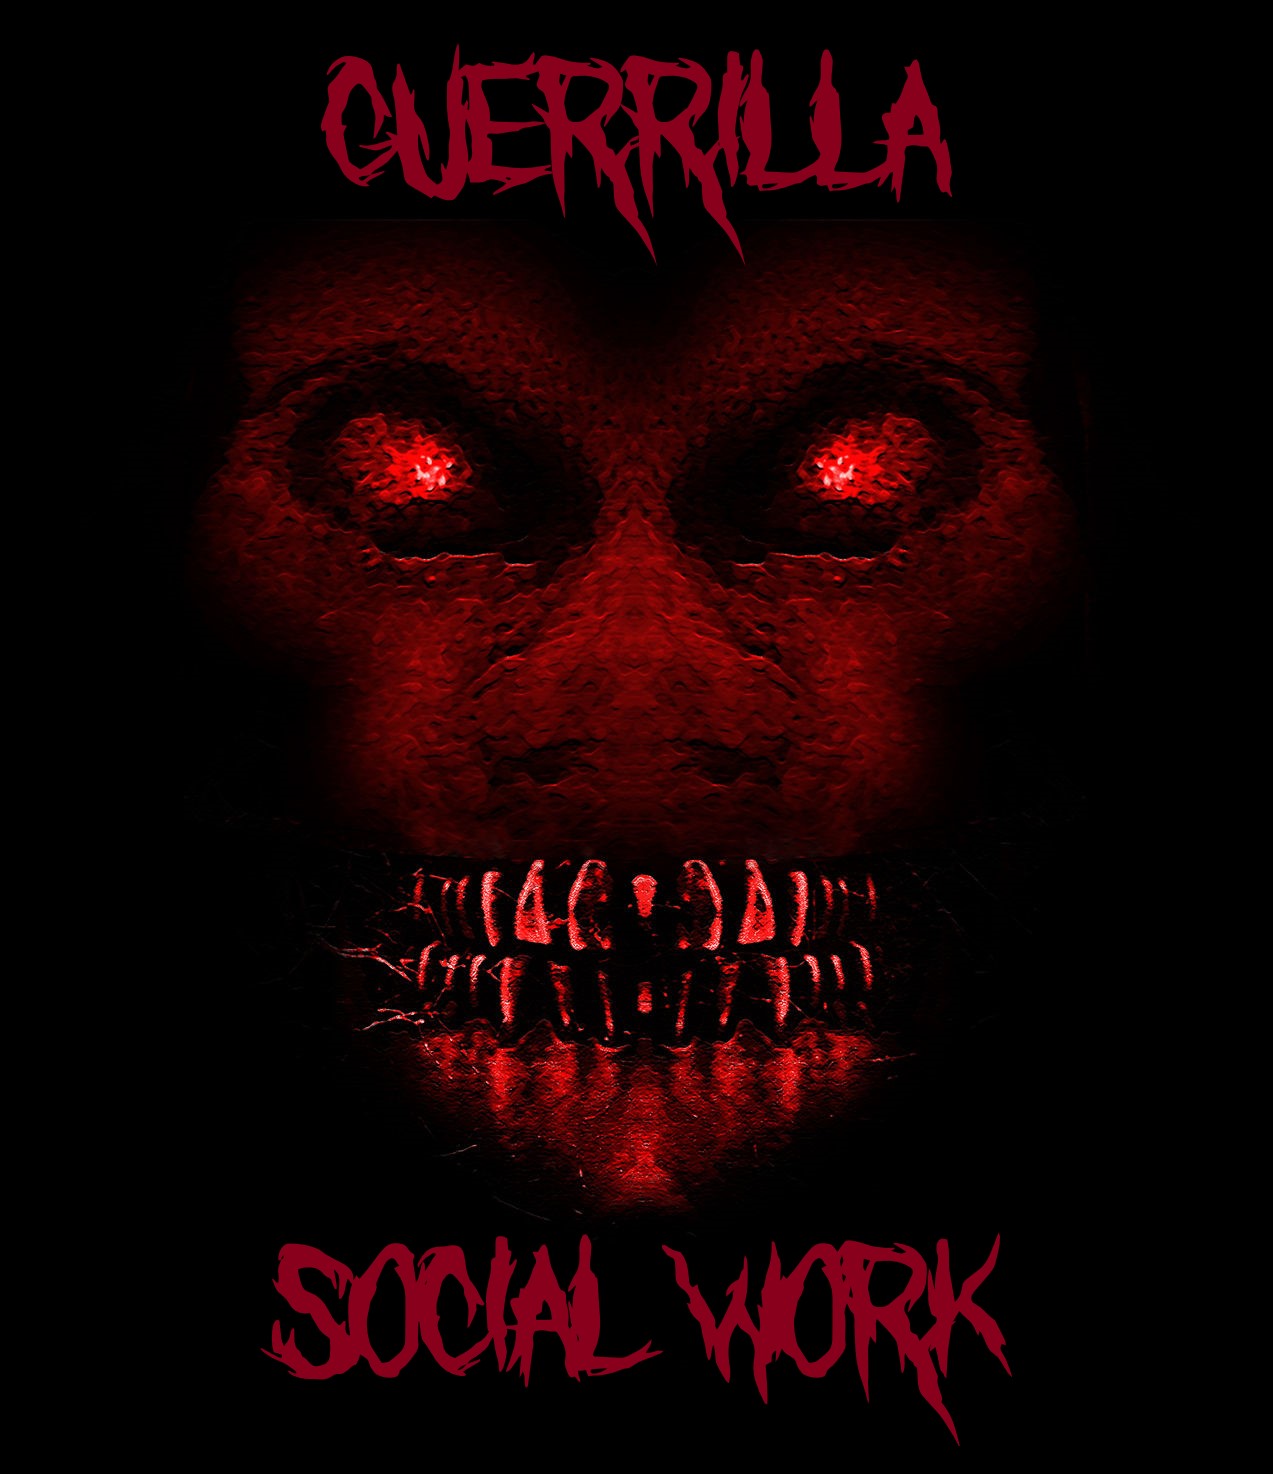 guerrilla social work